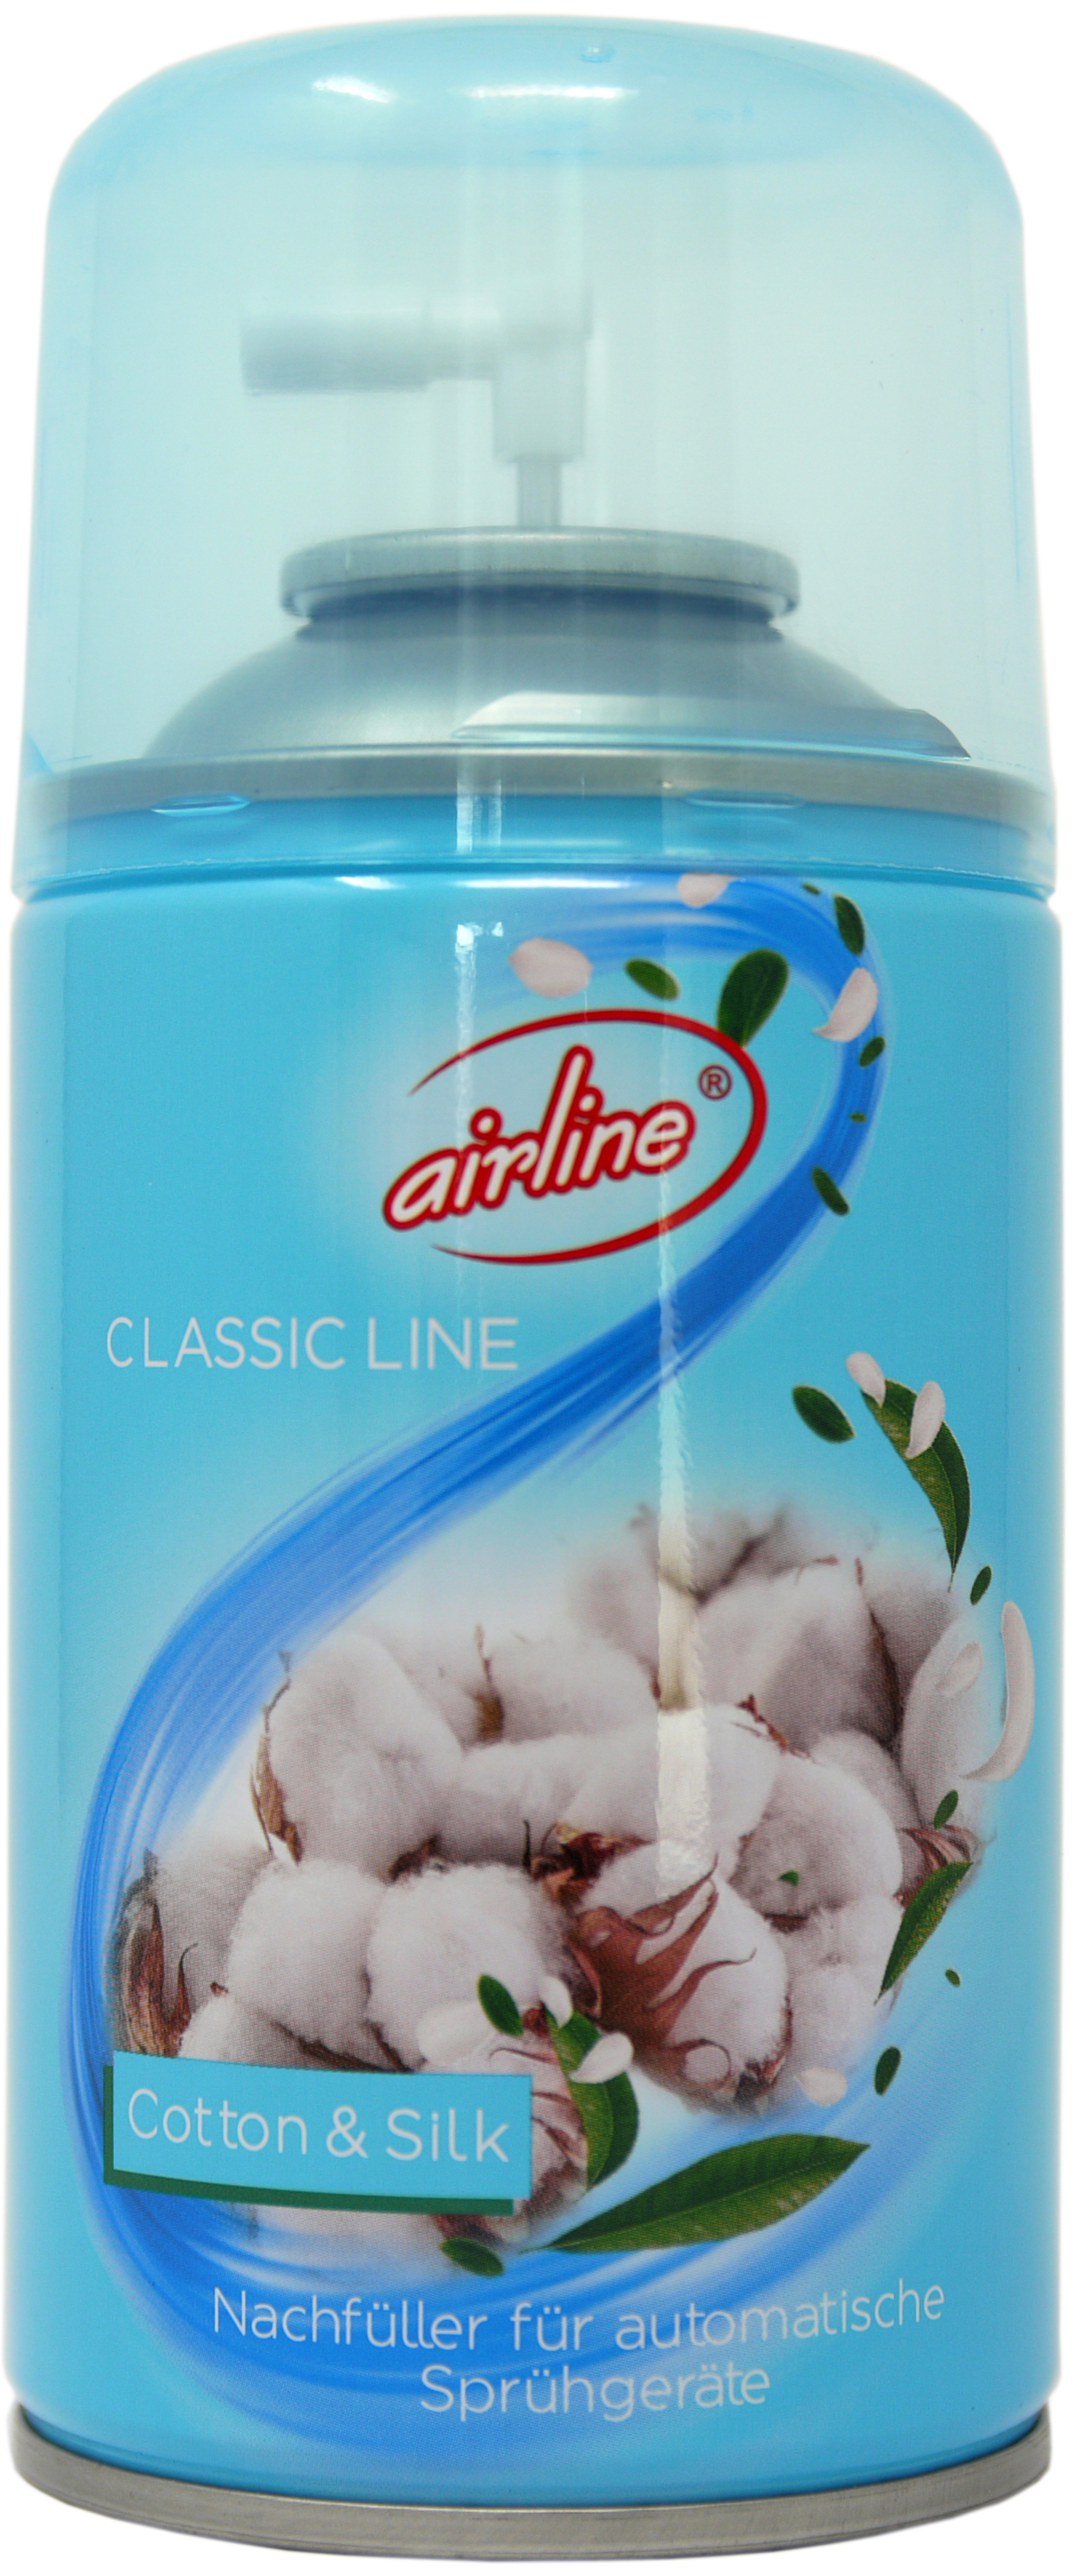 00519 - airline Spa Collection Cotton & Silk Nachfüllkartusche 250 ml